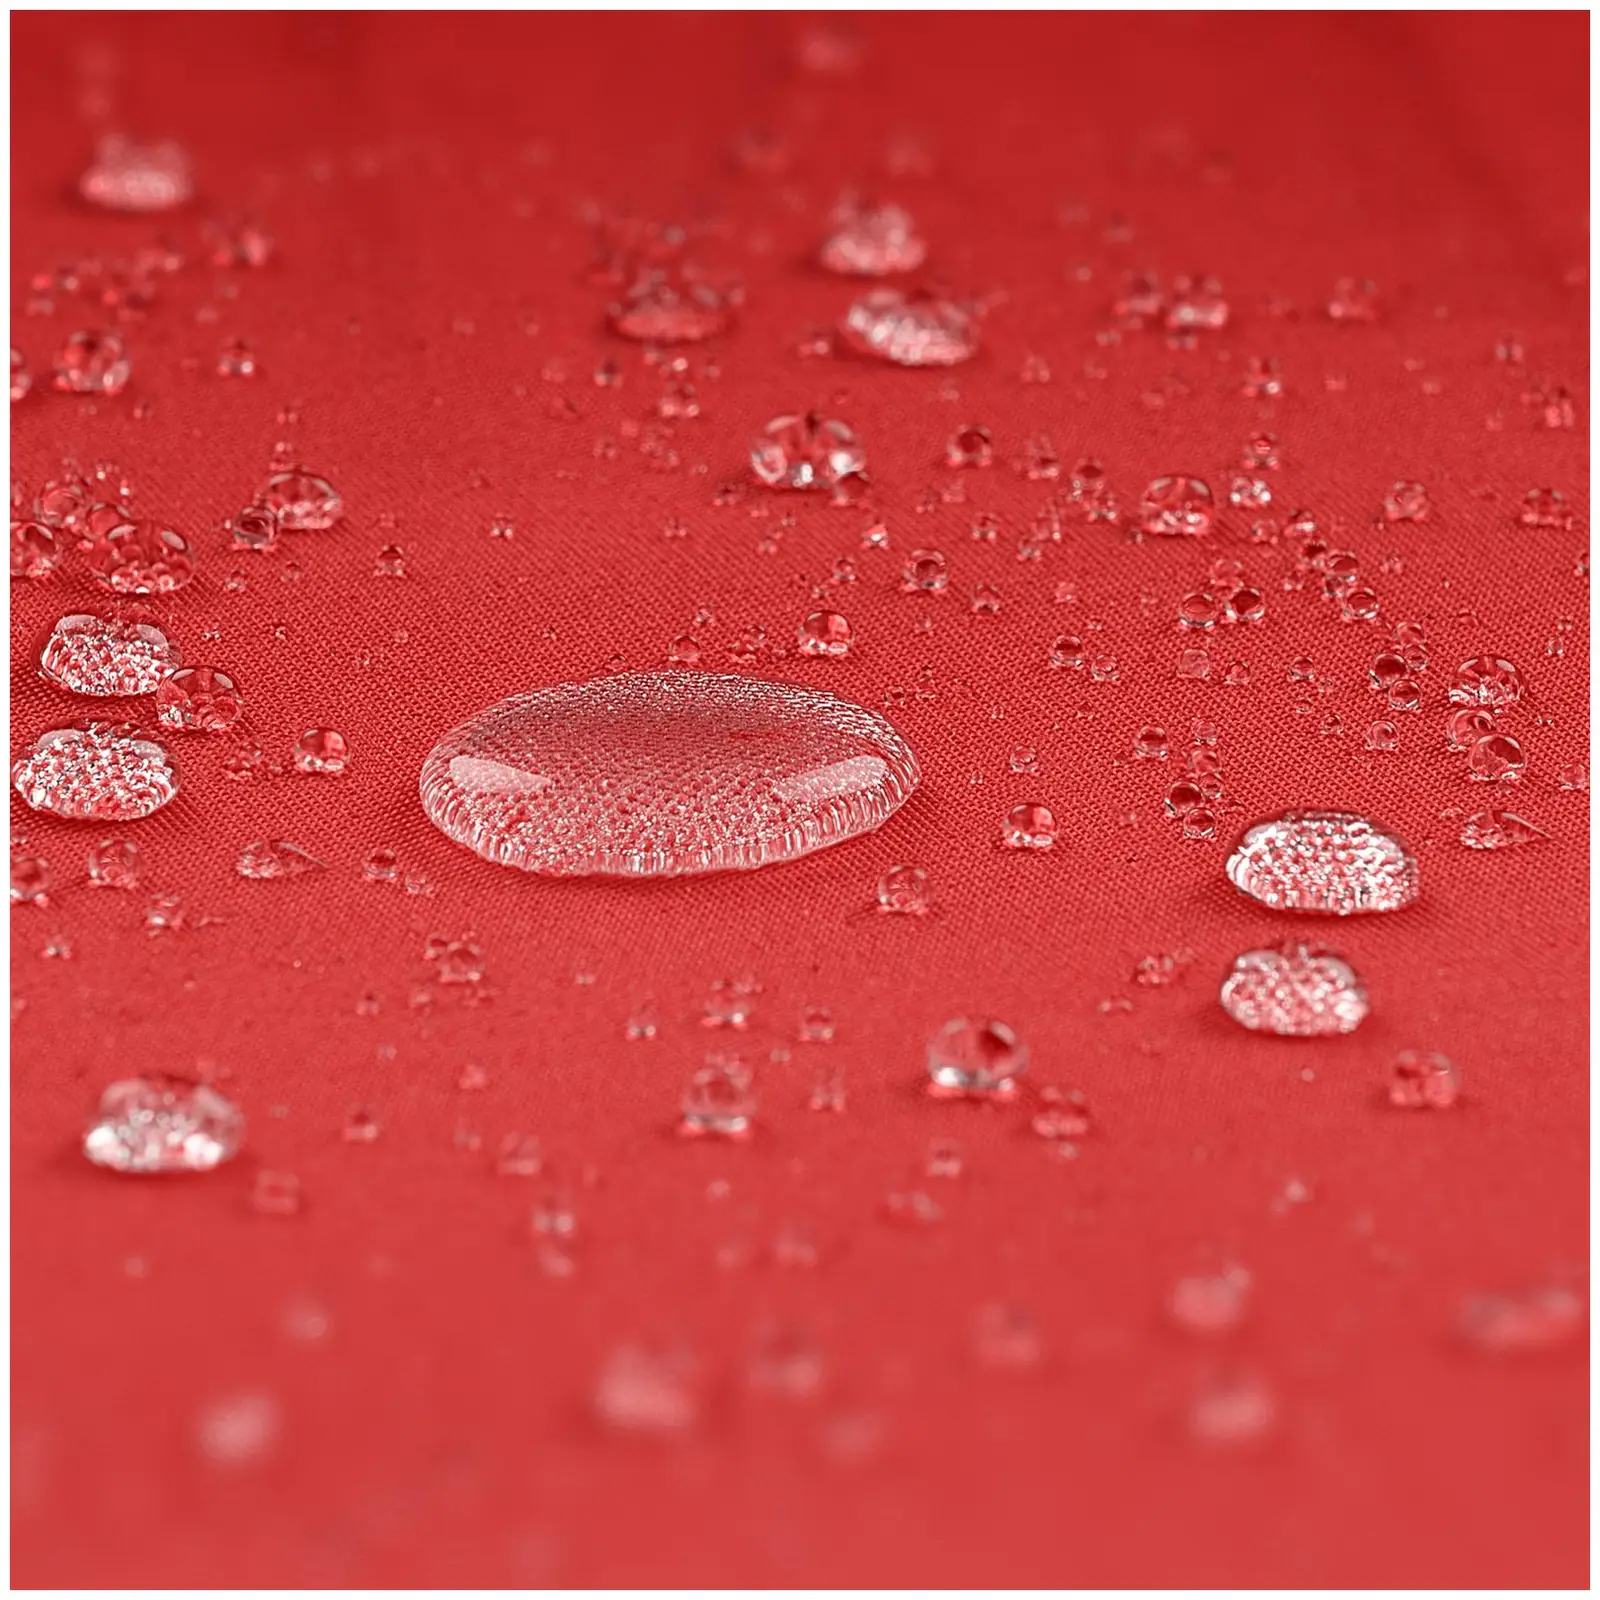 Andrahandssortering Hängparasoll - rött - rund - Ø 250 cm - vridbar